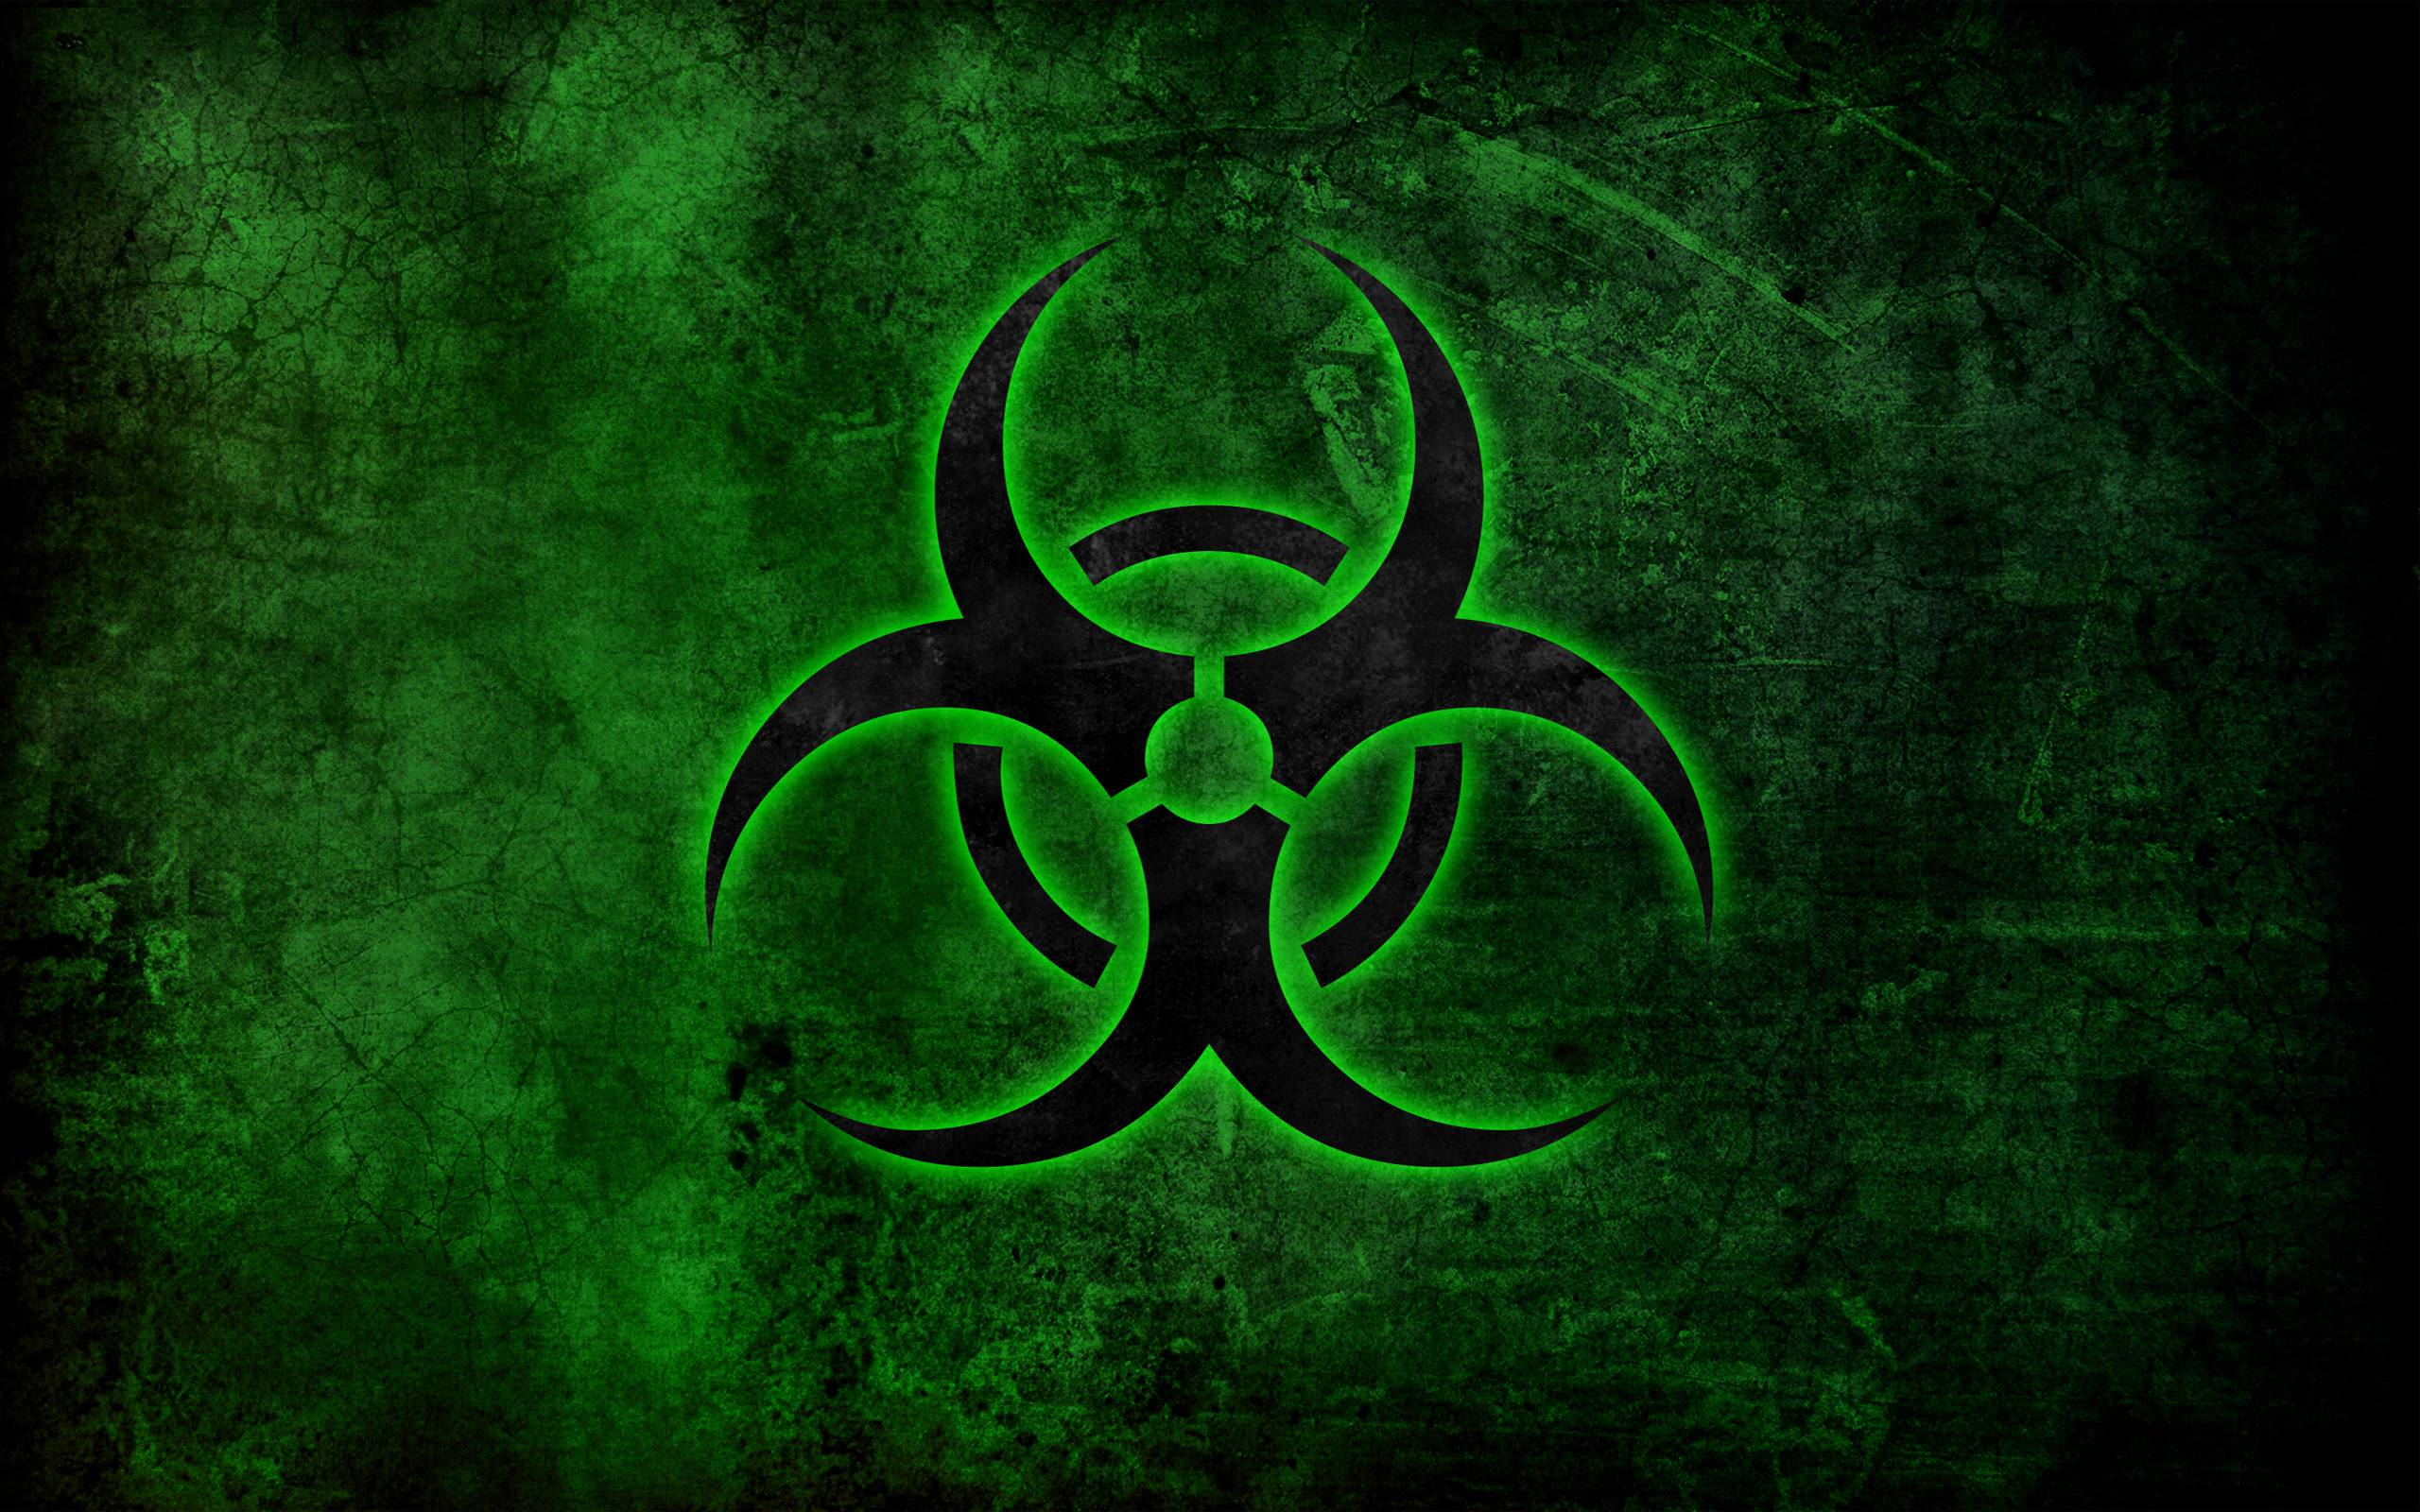 Biohazard Computer Wallpaper, Desktop Background 2560x1600 Id: 57385